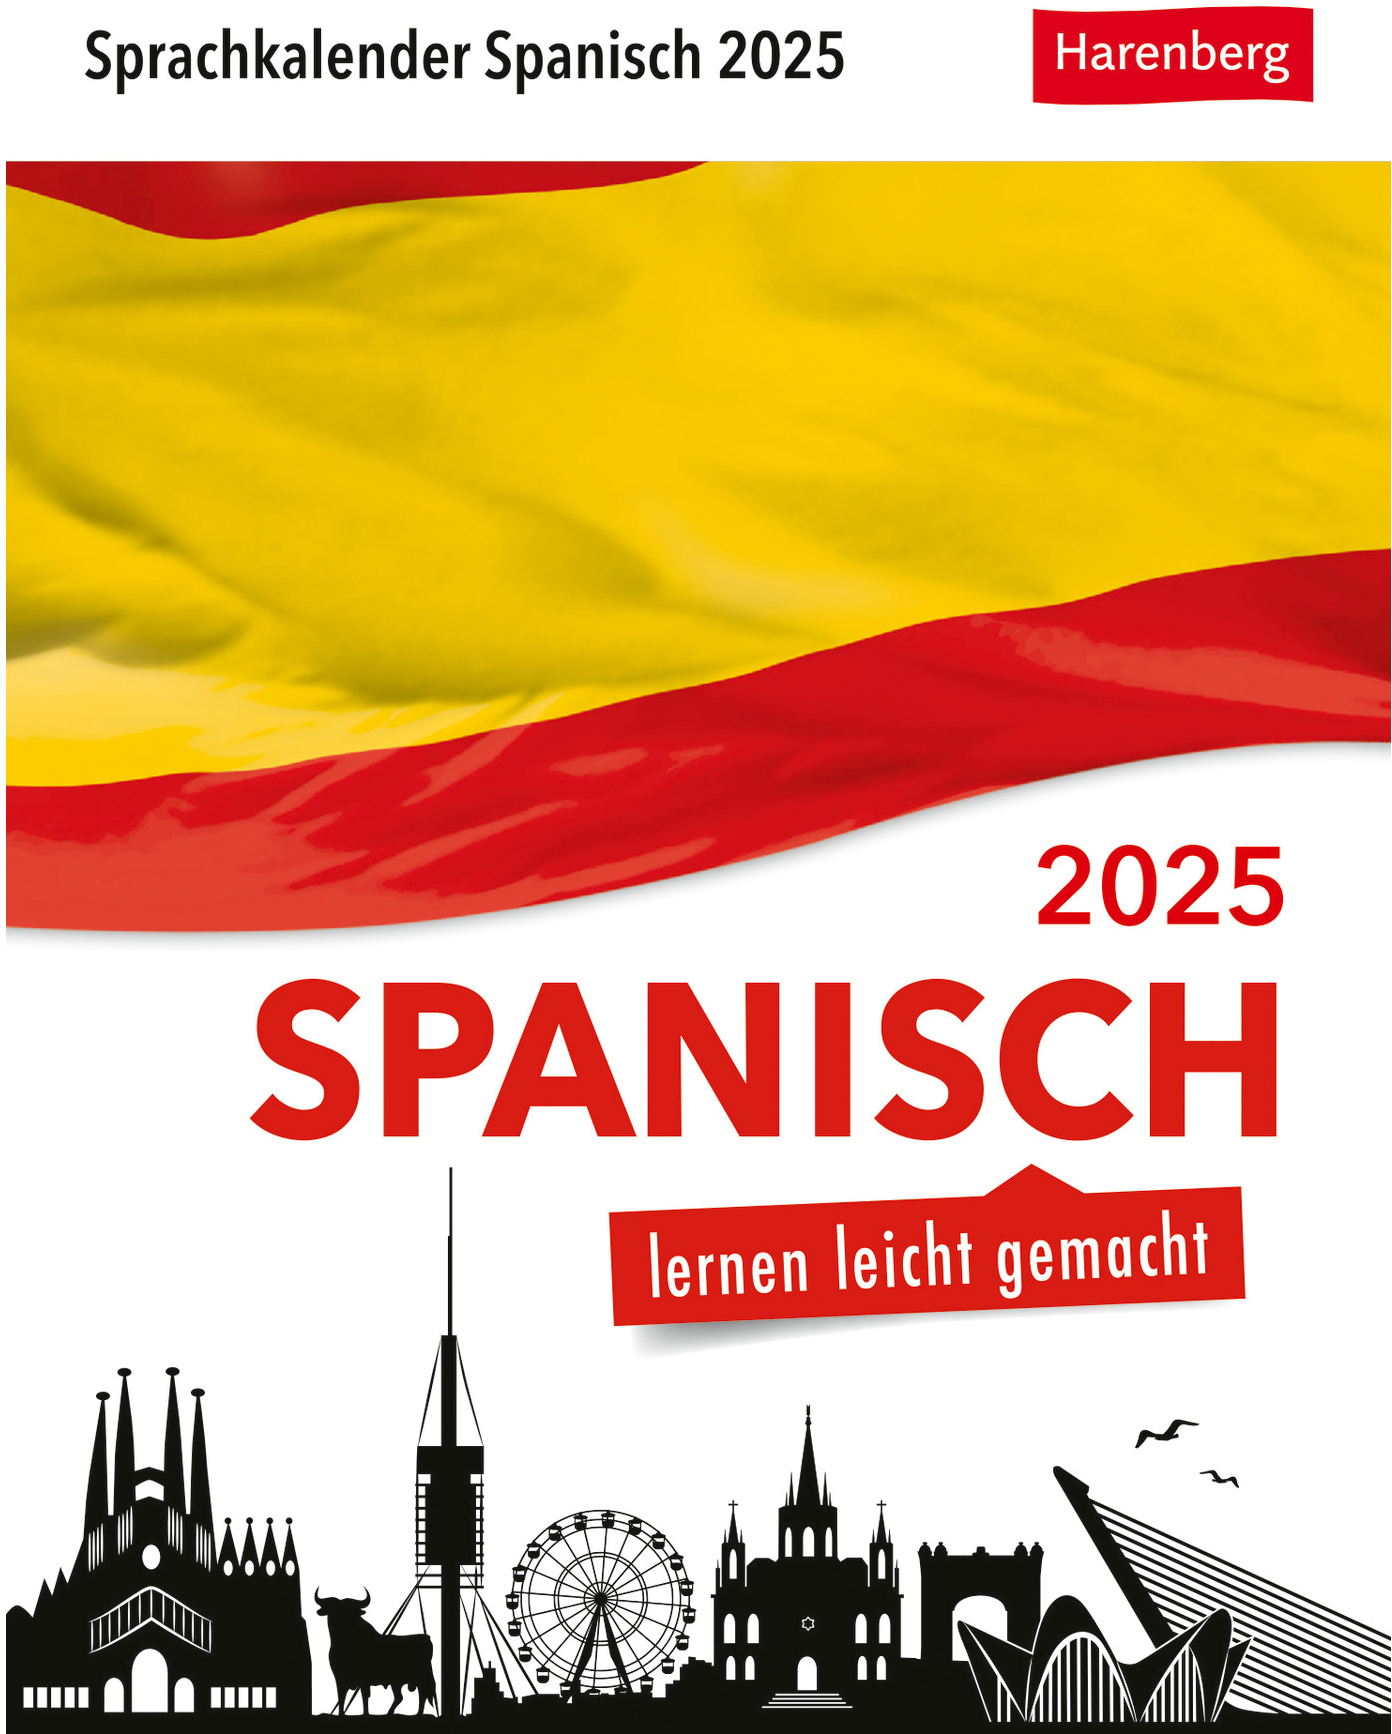 HARENBERG Calendrier détachable 2025 2111100+25 Spanisch DE, ES 12.5x16cm